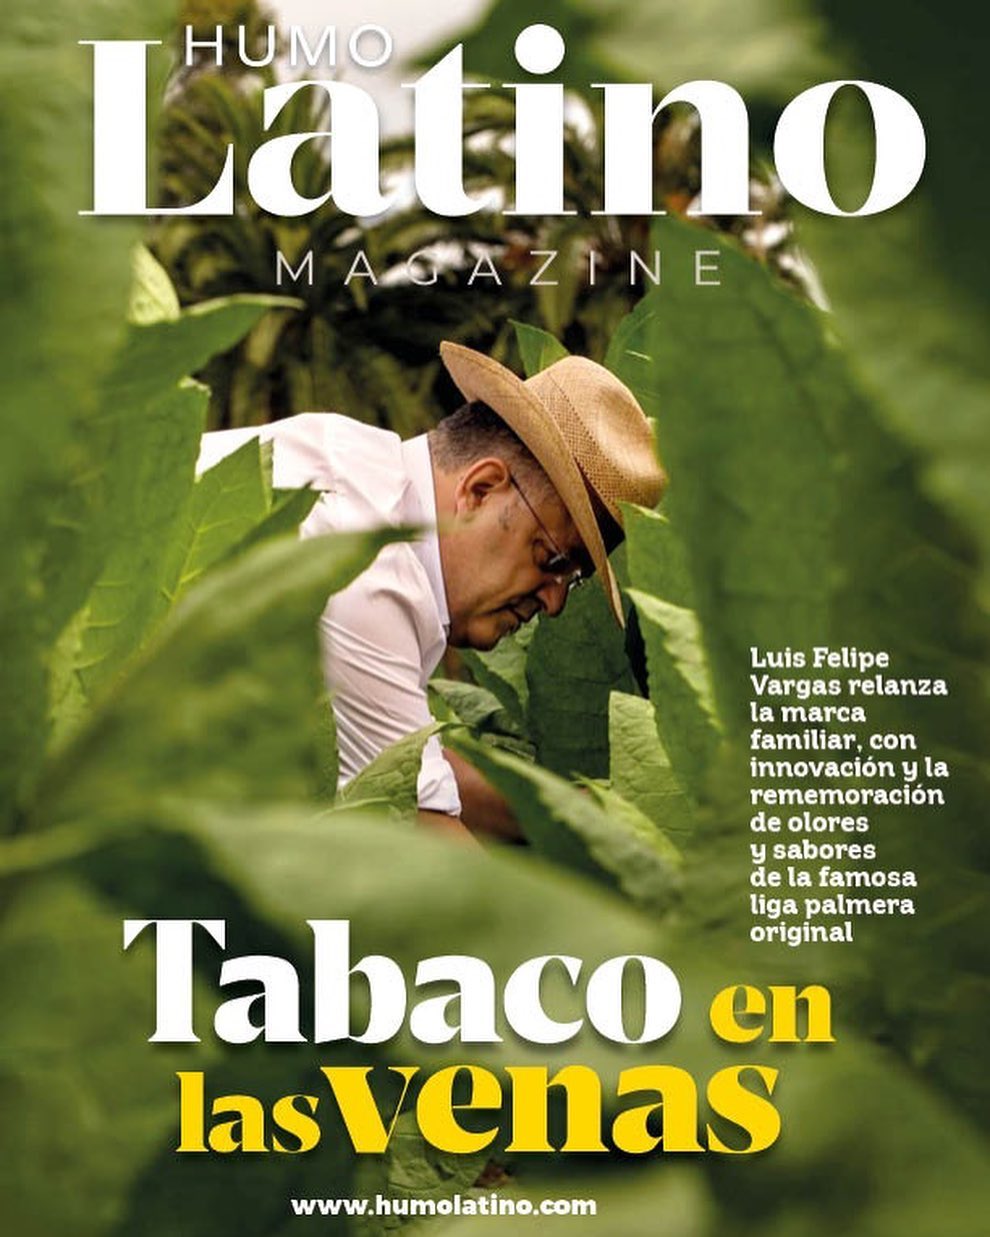 É com orgulho que apresento para vocês a Humo Latino Magazine, novo projeto, mesmo time consagrado